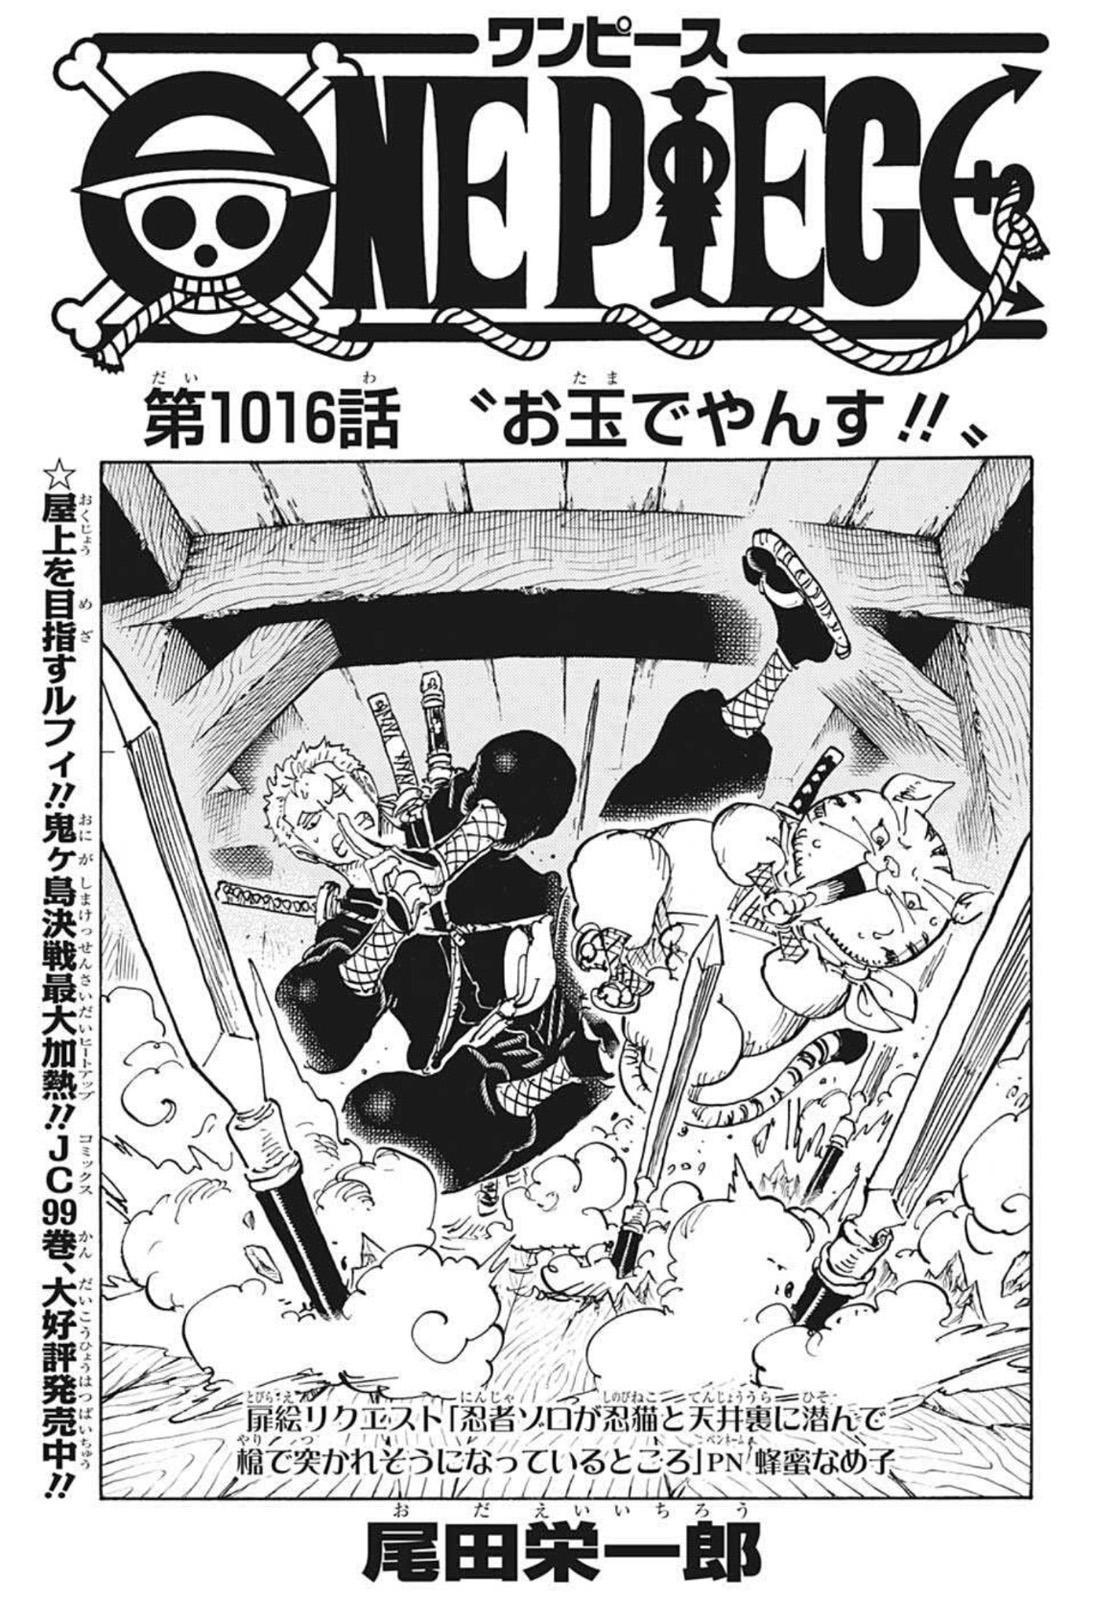 Capitulo 1016 One Piece Wiki Fandom